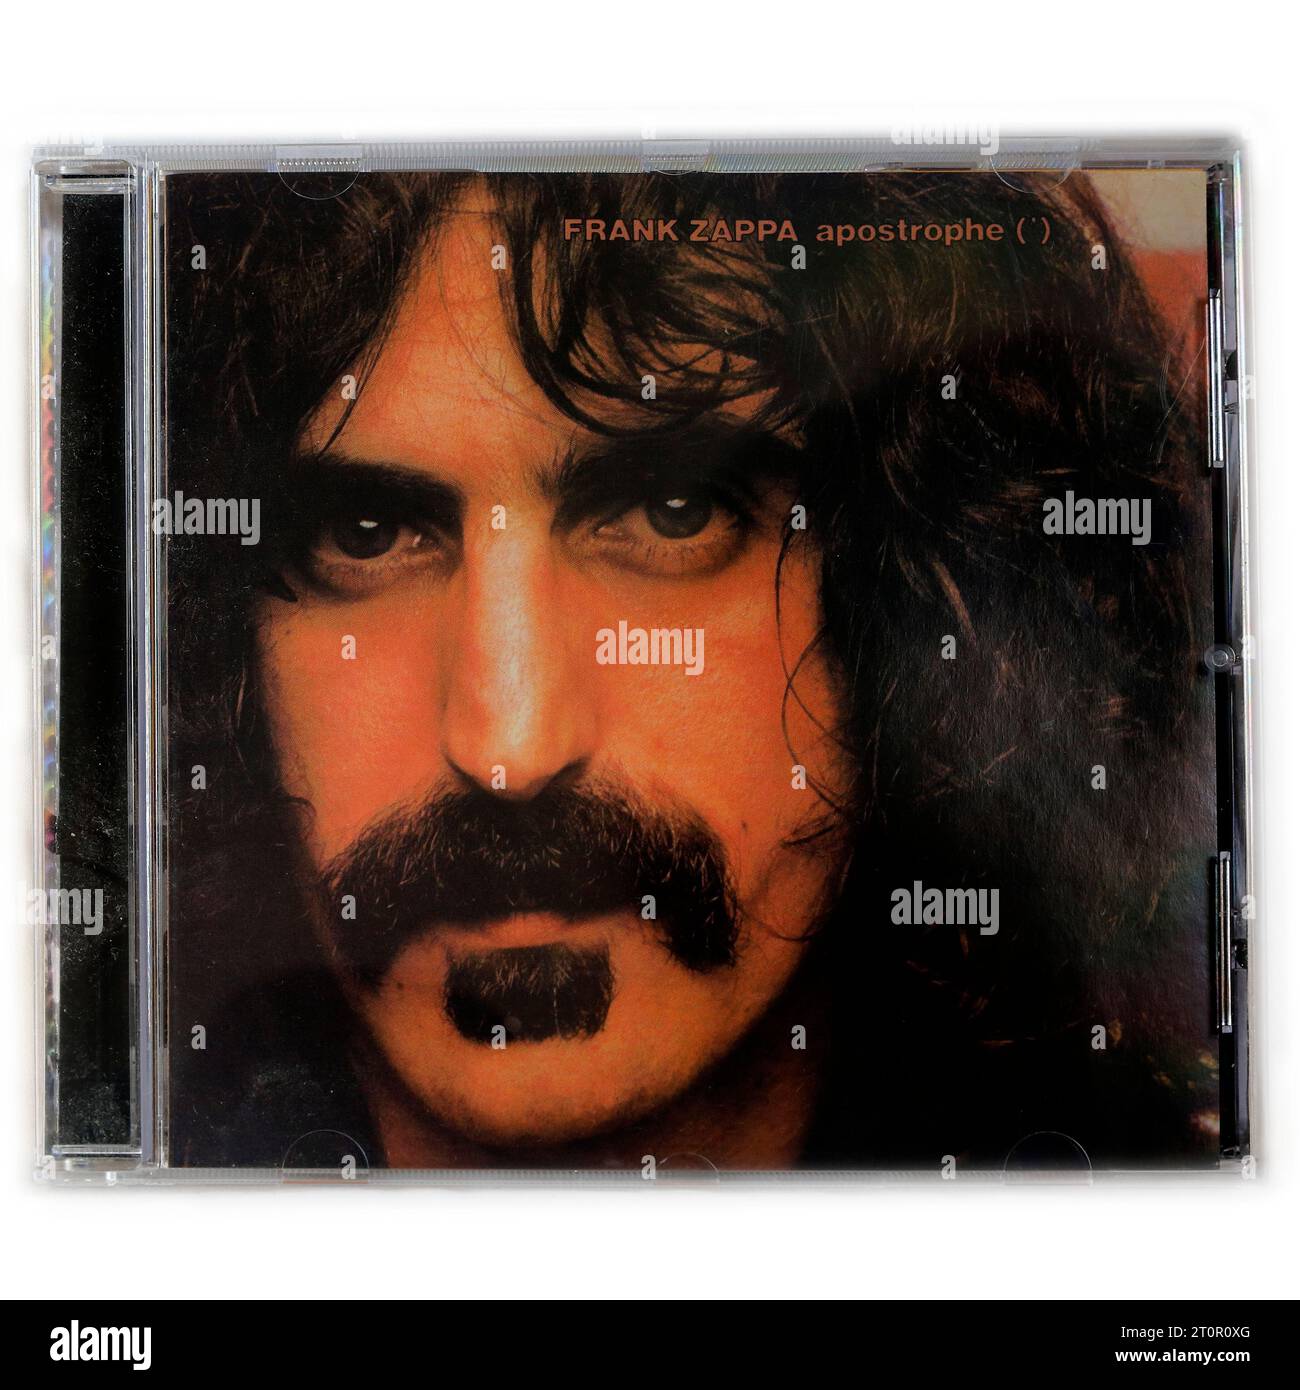 Frank Zappa - Apostrophe - étui CD d'occasion sur fond clair Banque D'Images